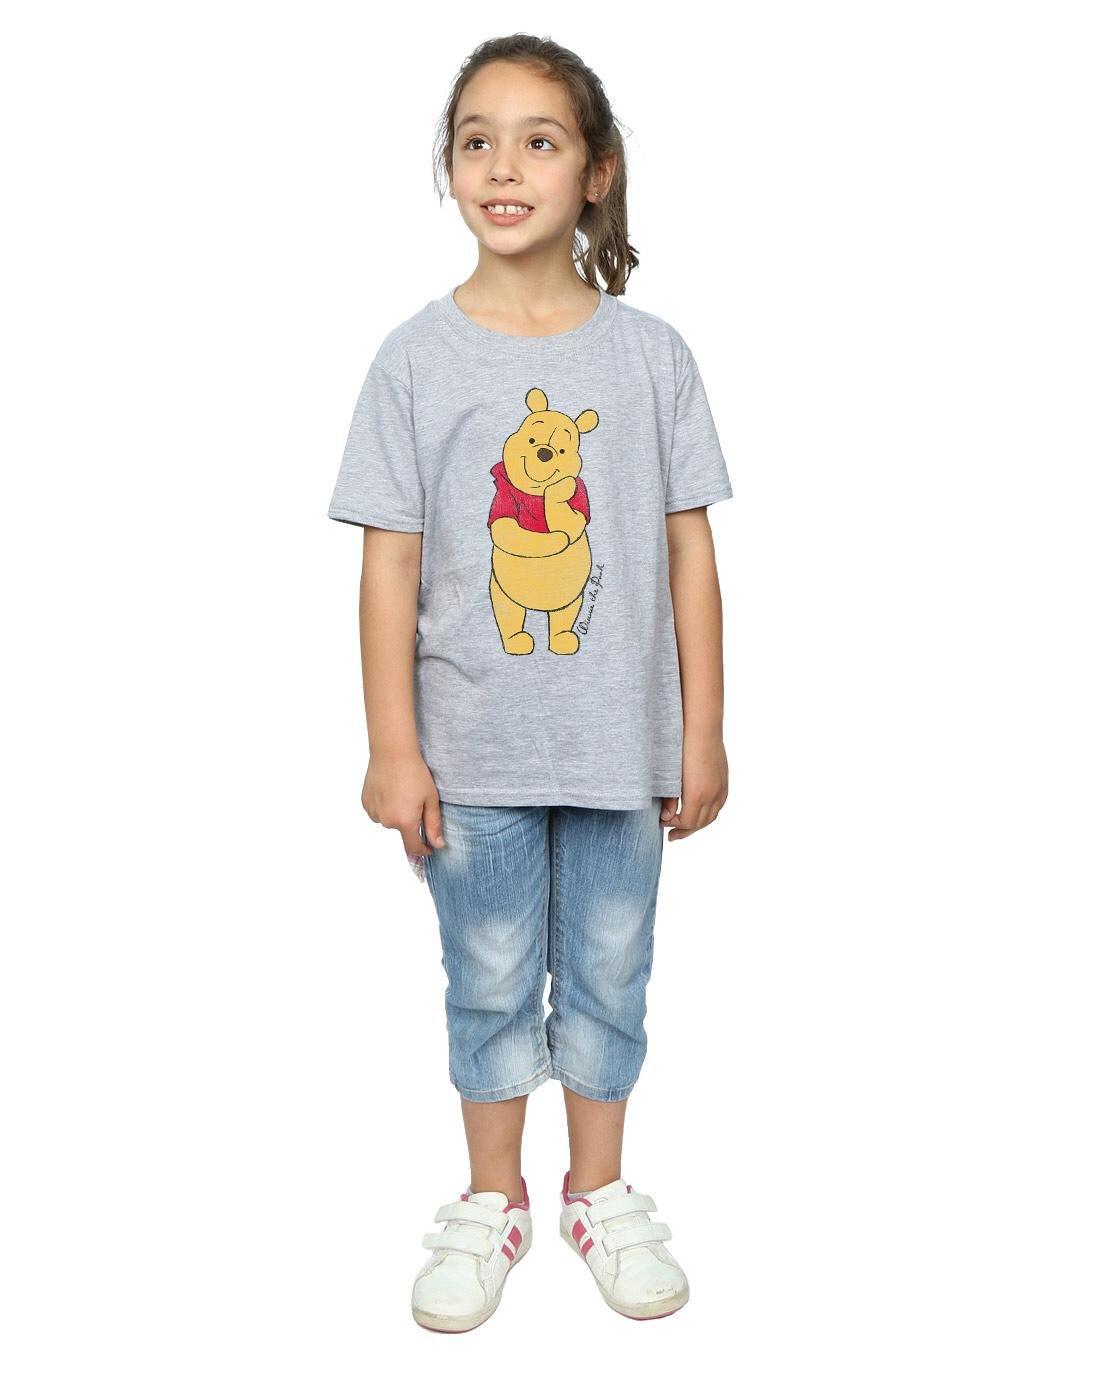 Winnie the Pooh  Classic TShirt 